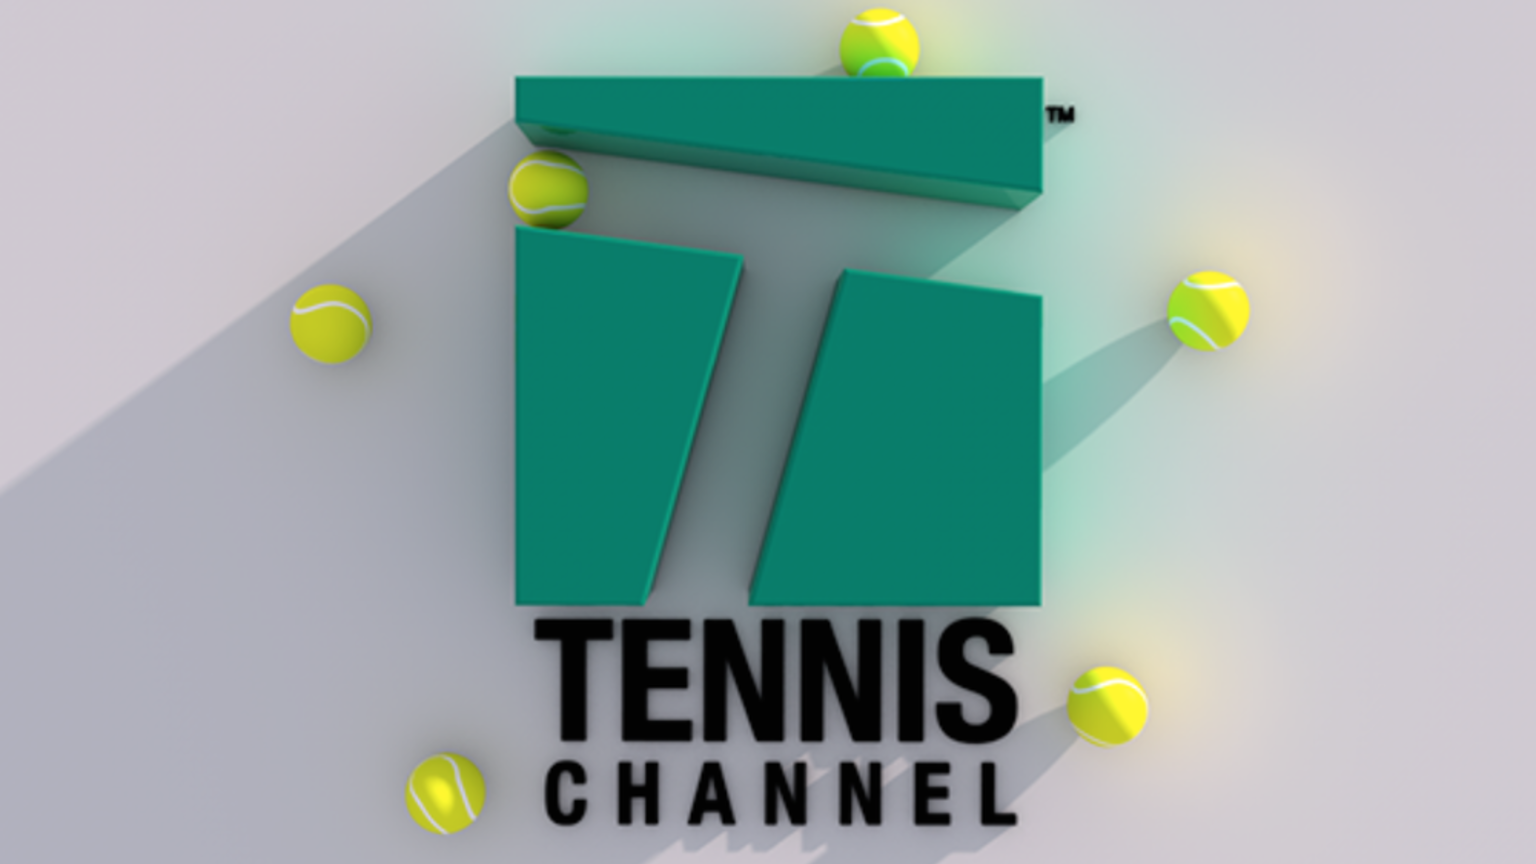 Tennis Channel Slate 1536x864 Crop 